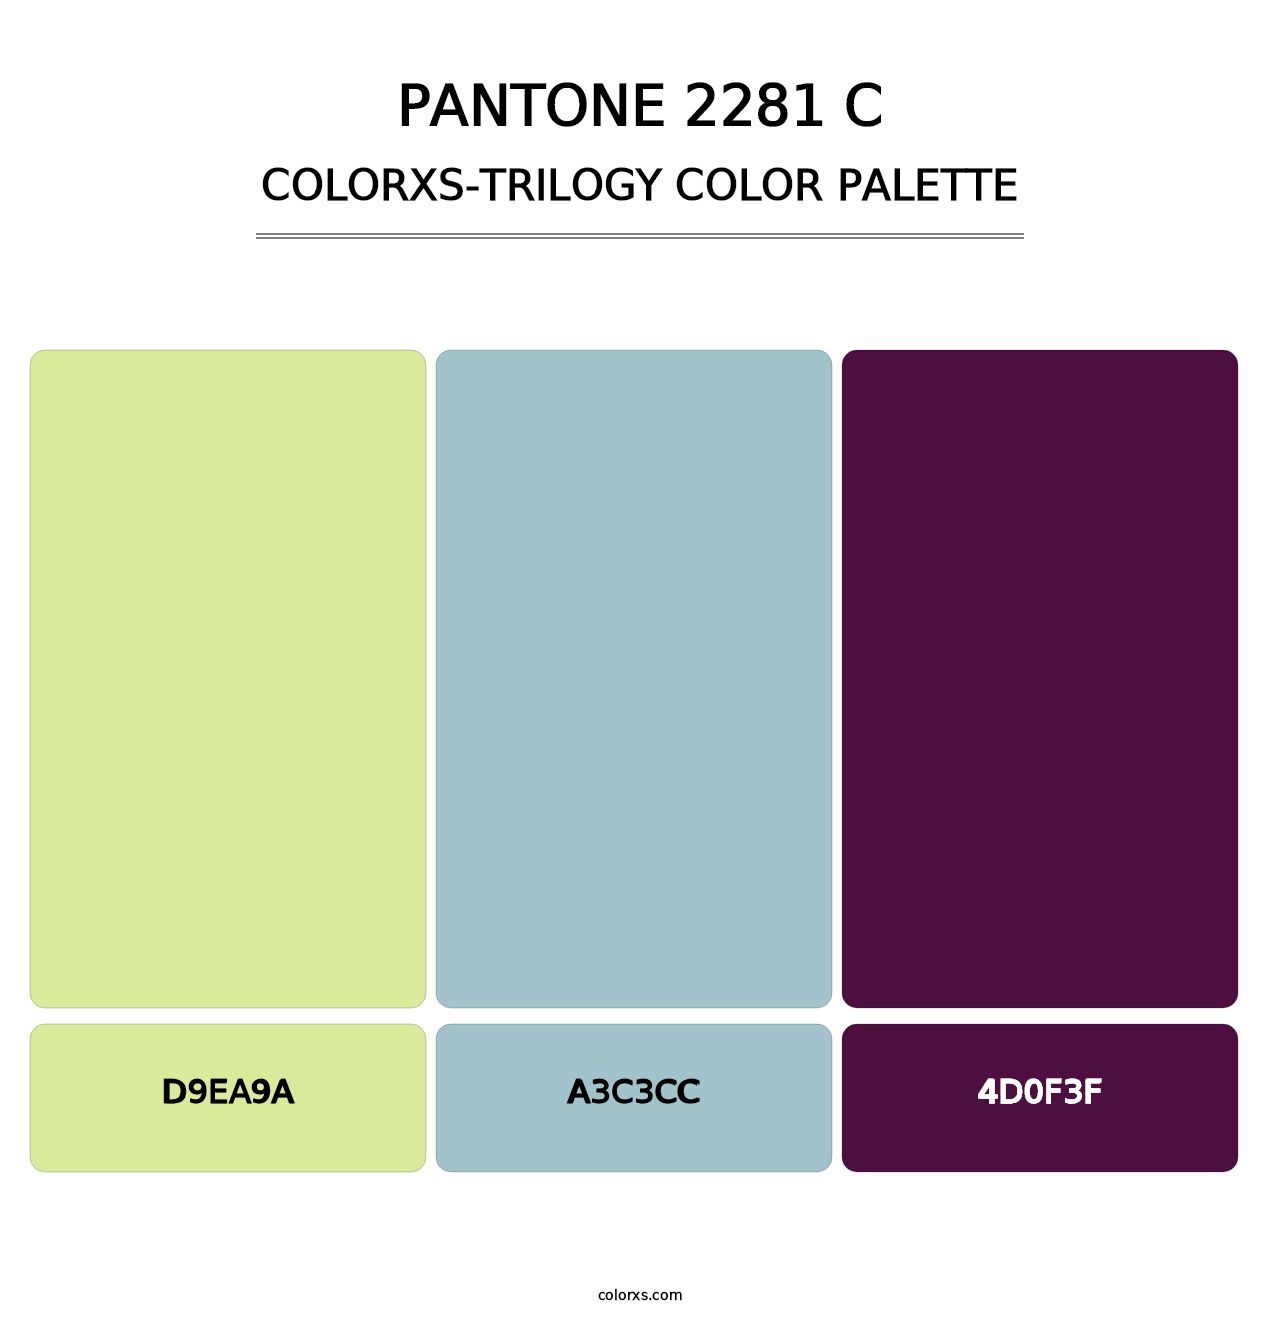 PANTONE 2281 C - Colorxs Trilogy Palette